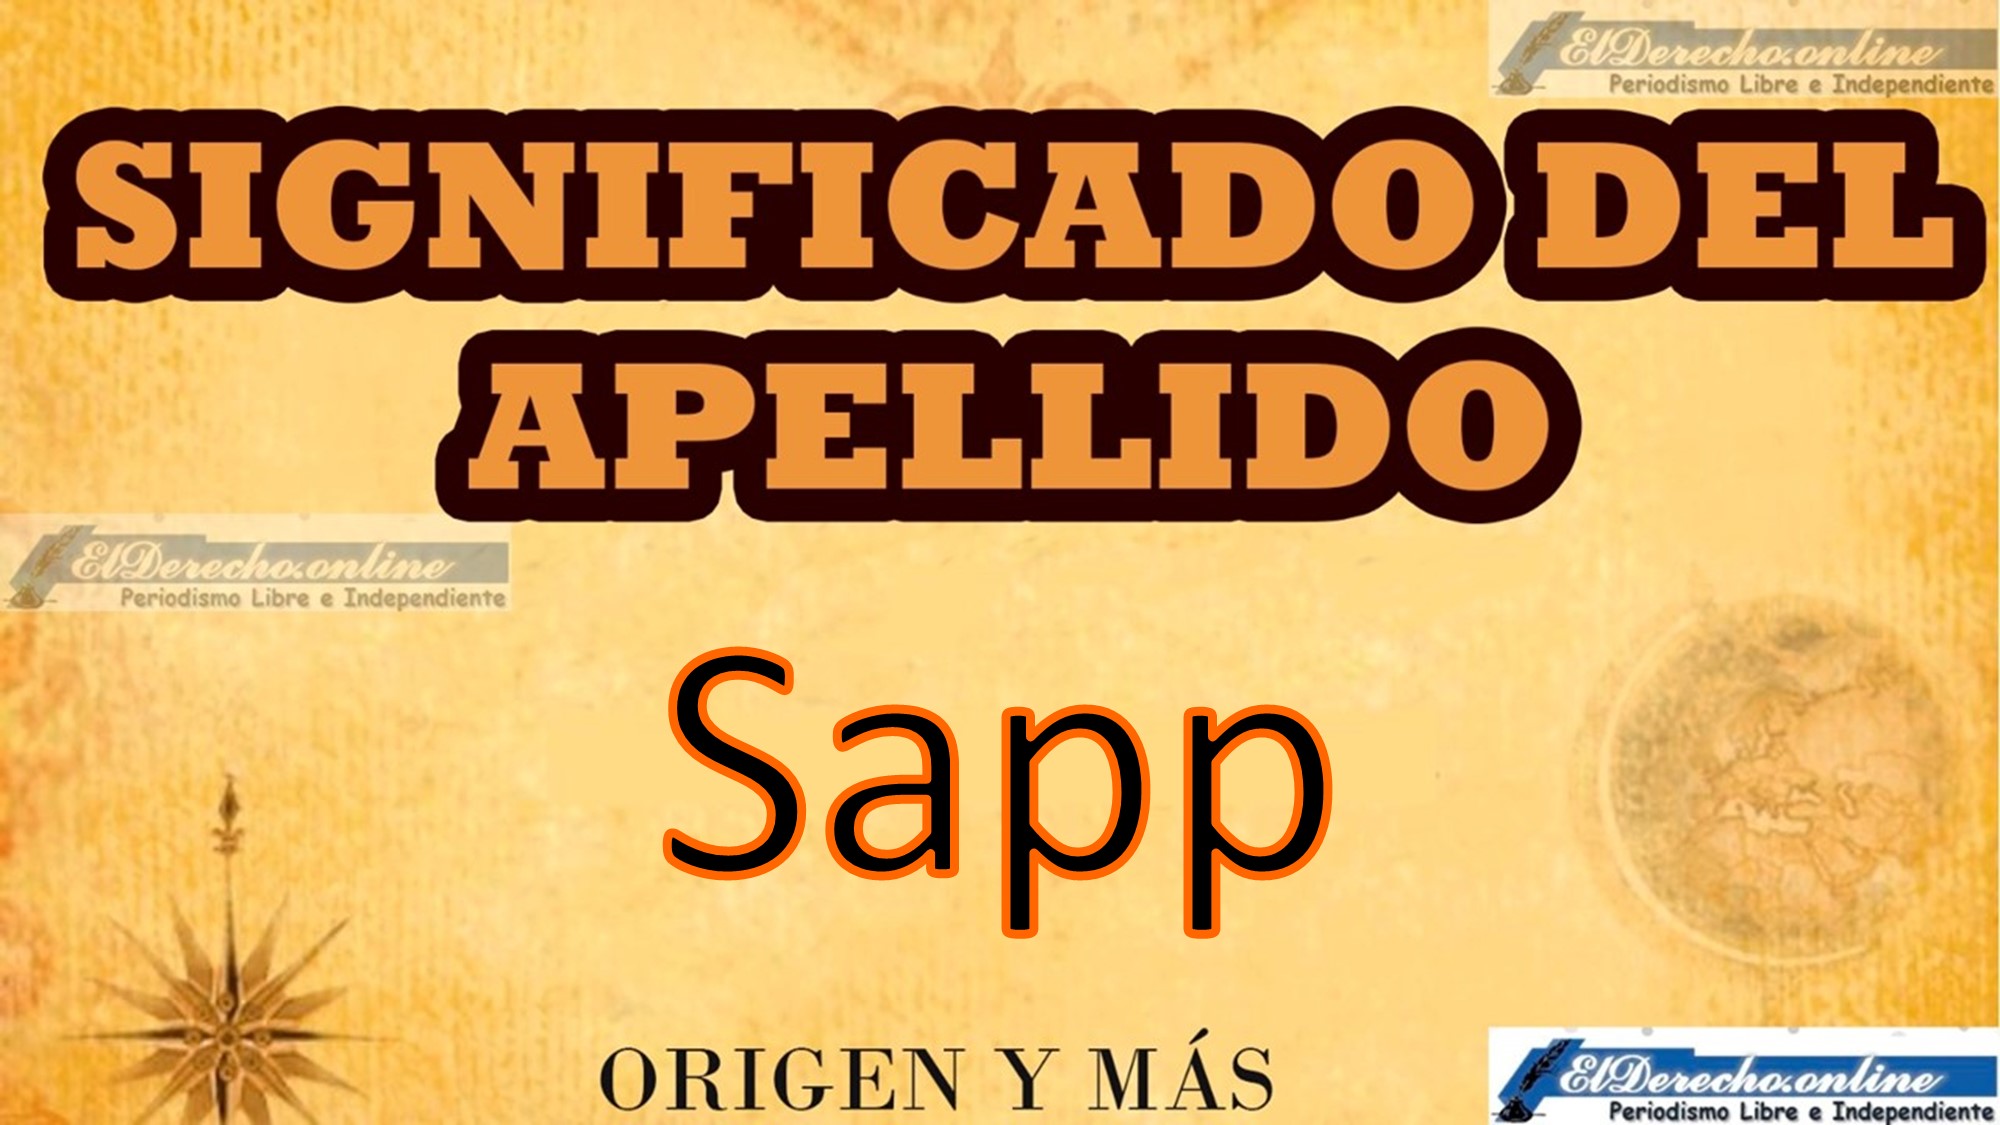 Significado del apellido Sapp, Origen y más